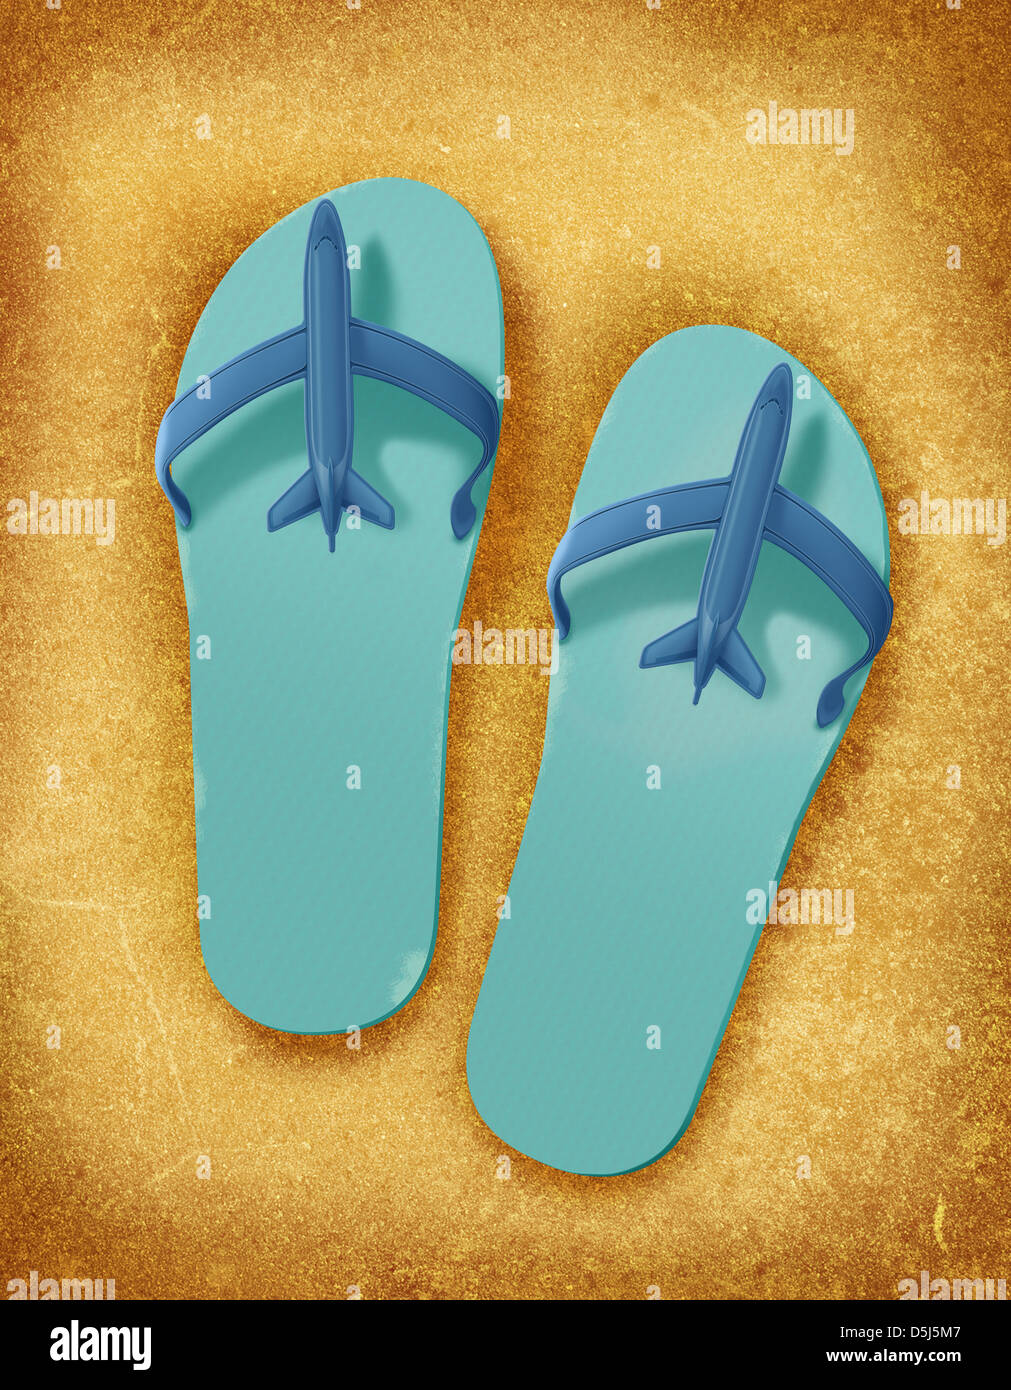 Illustration de chaussons de plage Banque D'Images